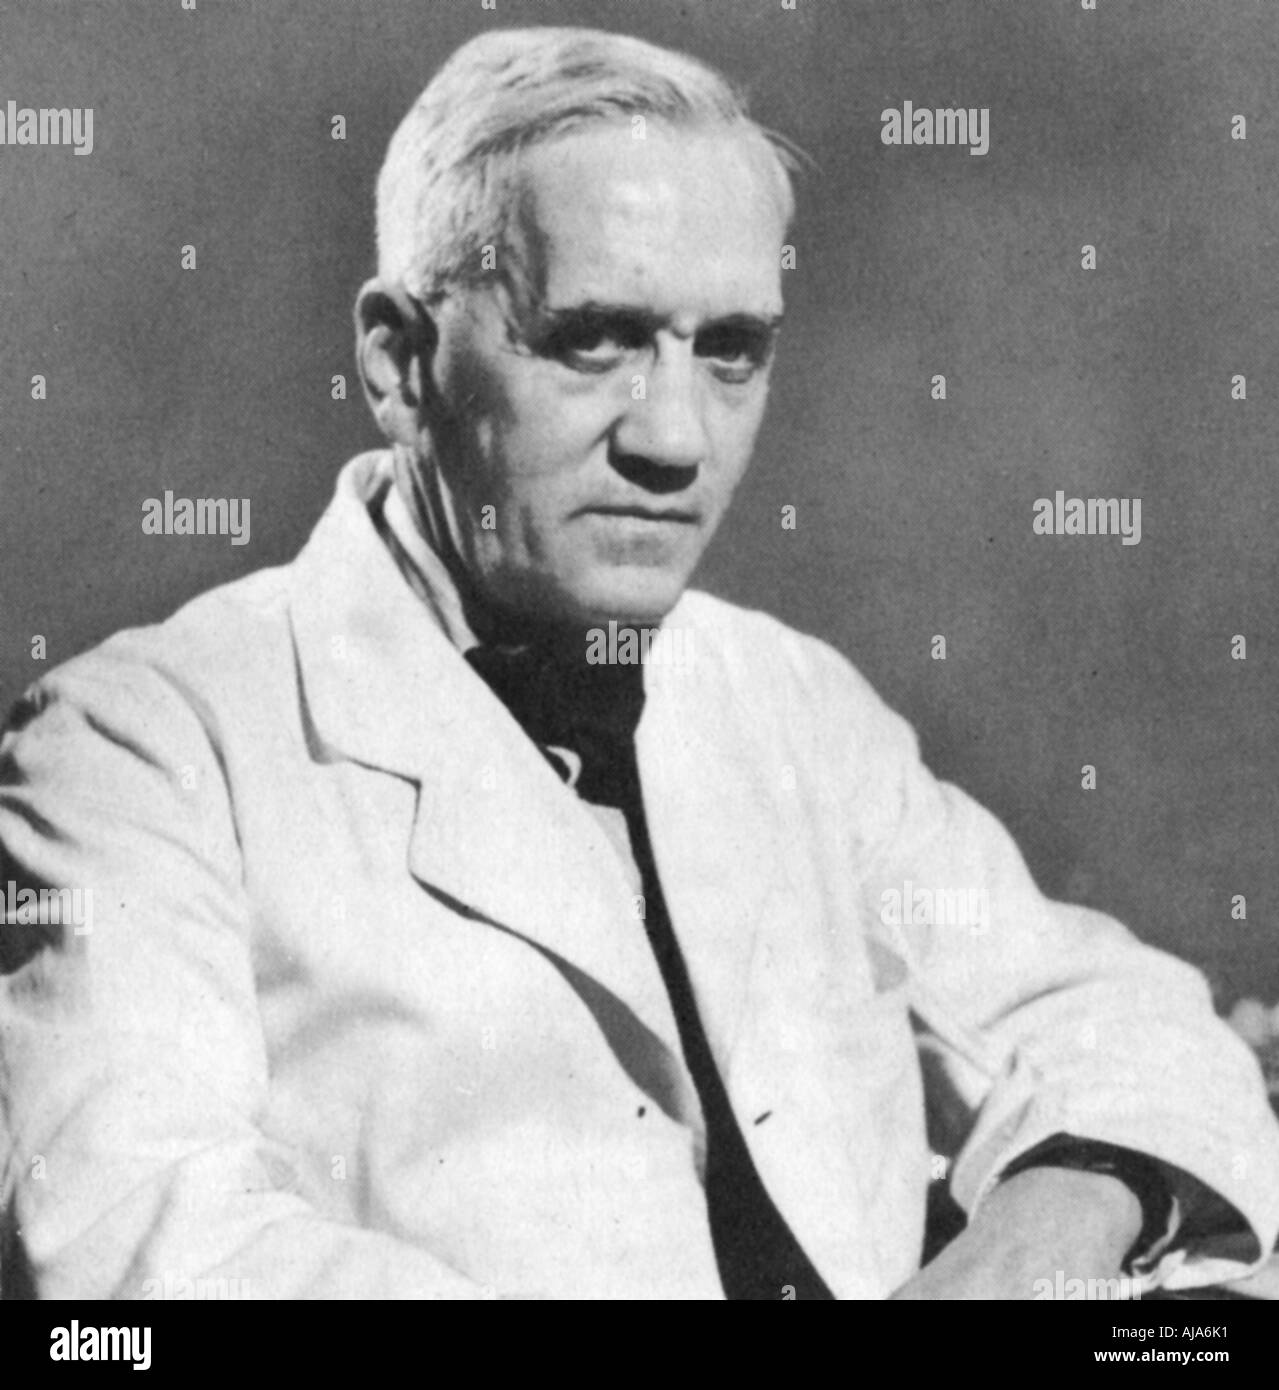 Alexander Fleming, bactériologiste écossais, c1930s. Artiste : Inconnu Banque D'Images